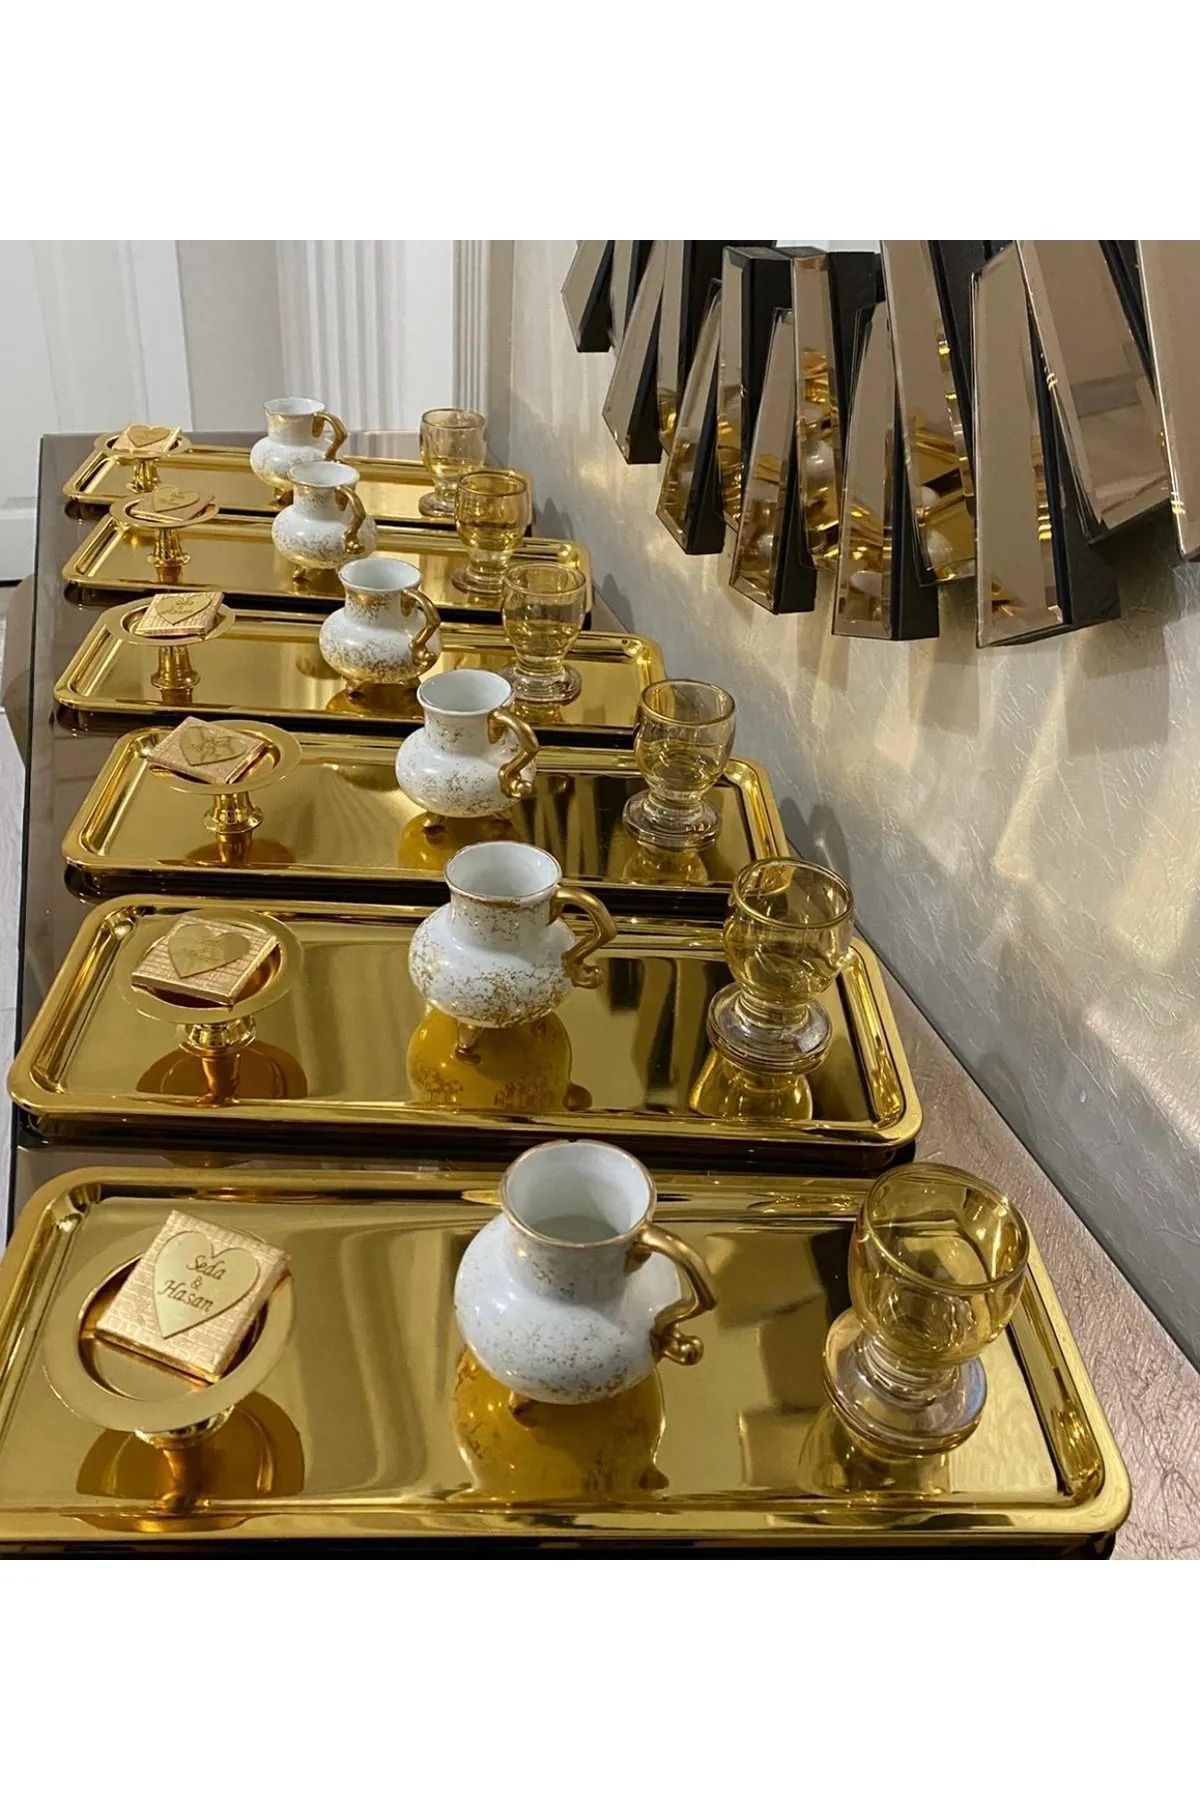 Mira züccaciye Lüx 6 Lı Paslanmaz Çelik Gold Renk Baton Çay,Kahve Dekoratif Sunum, Servis Tepsisi